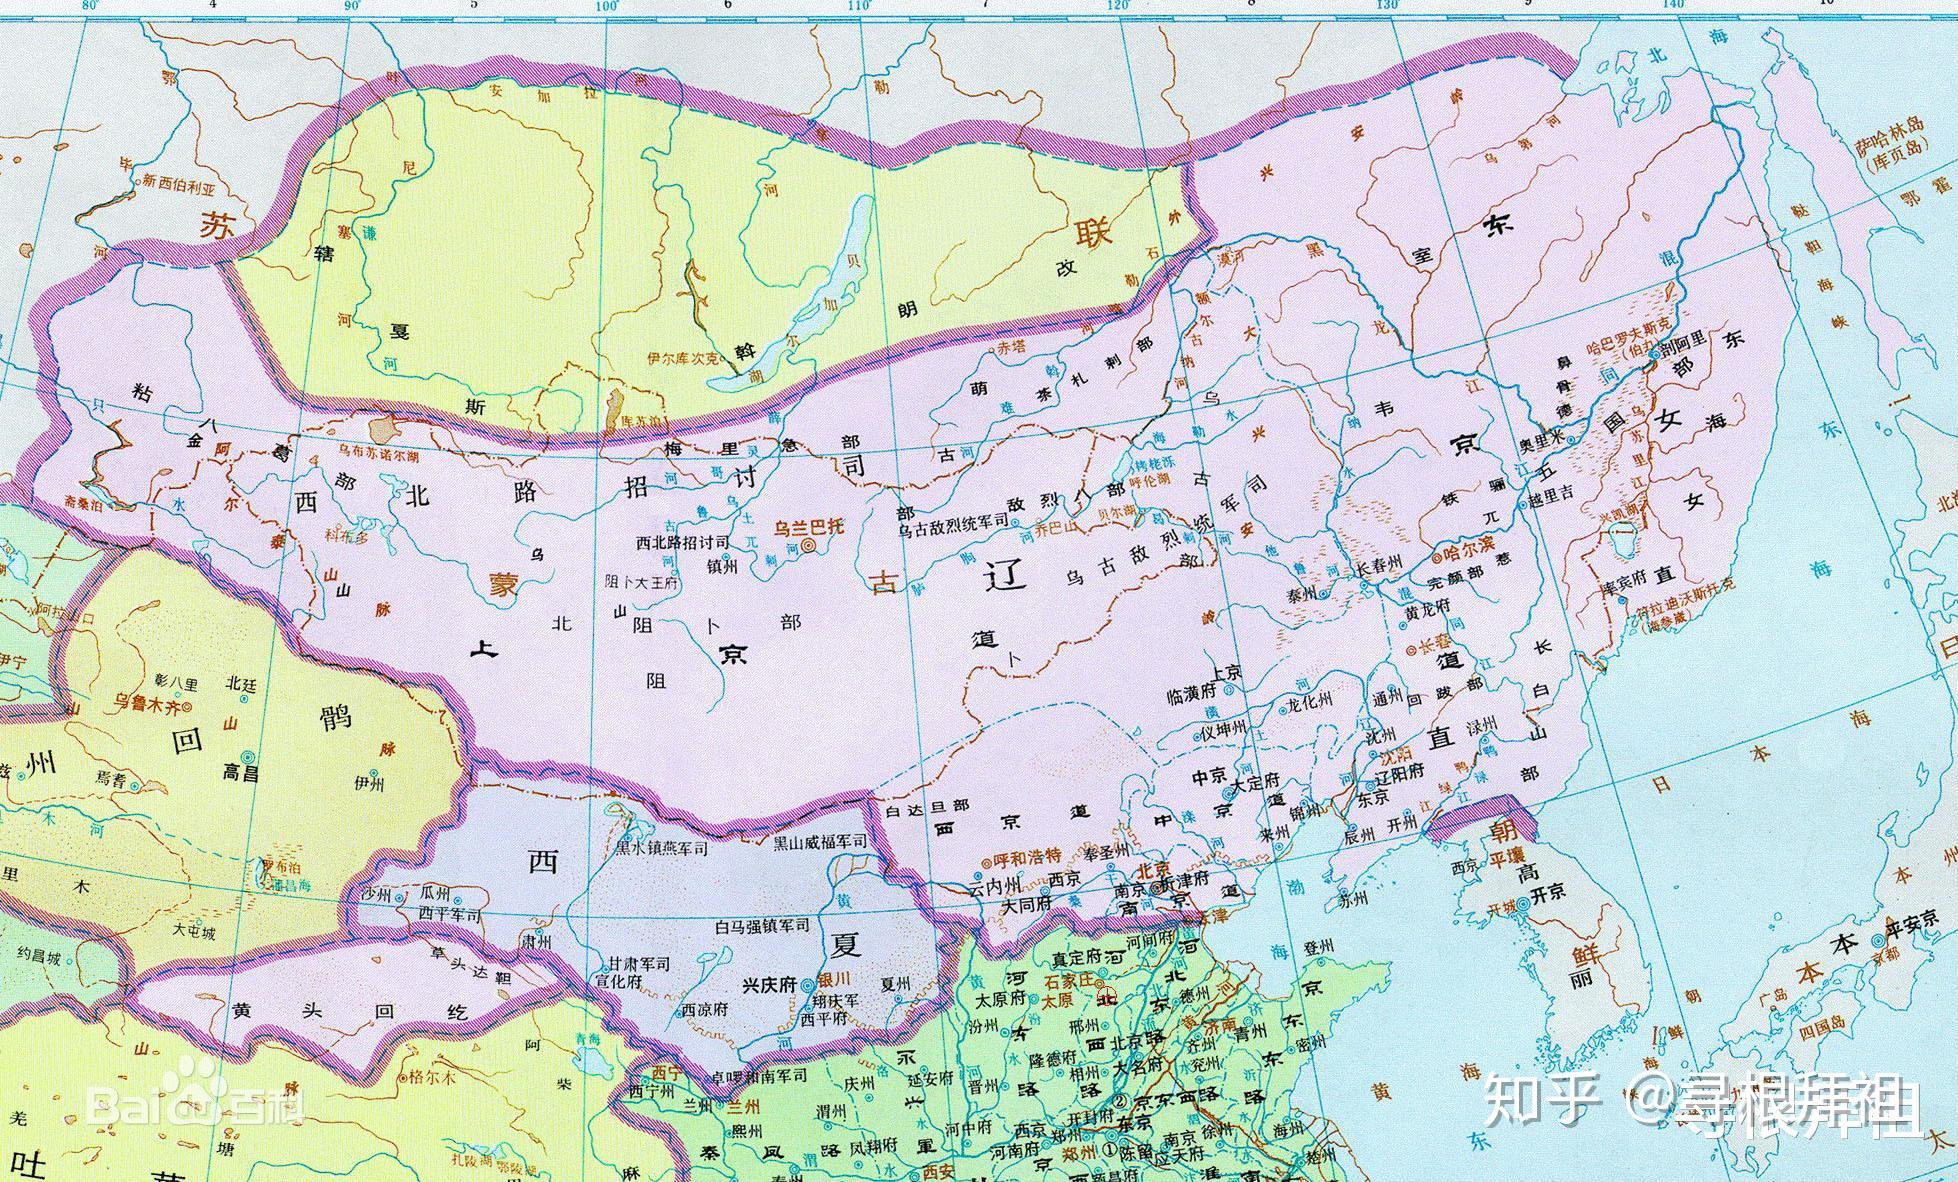 历史上有个比南宋牛很多的西辽帝国,打遍中亚无敌,为何很少提及